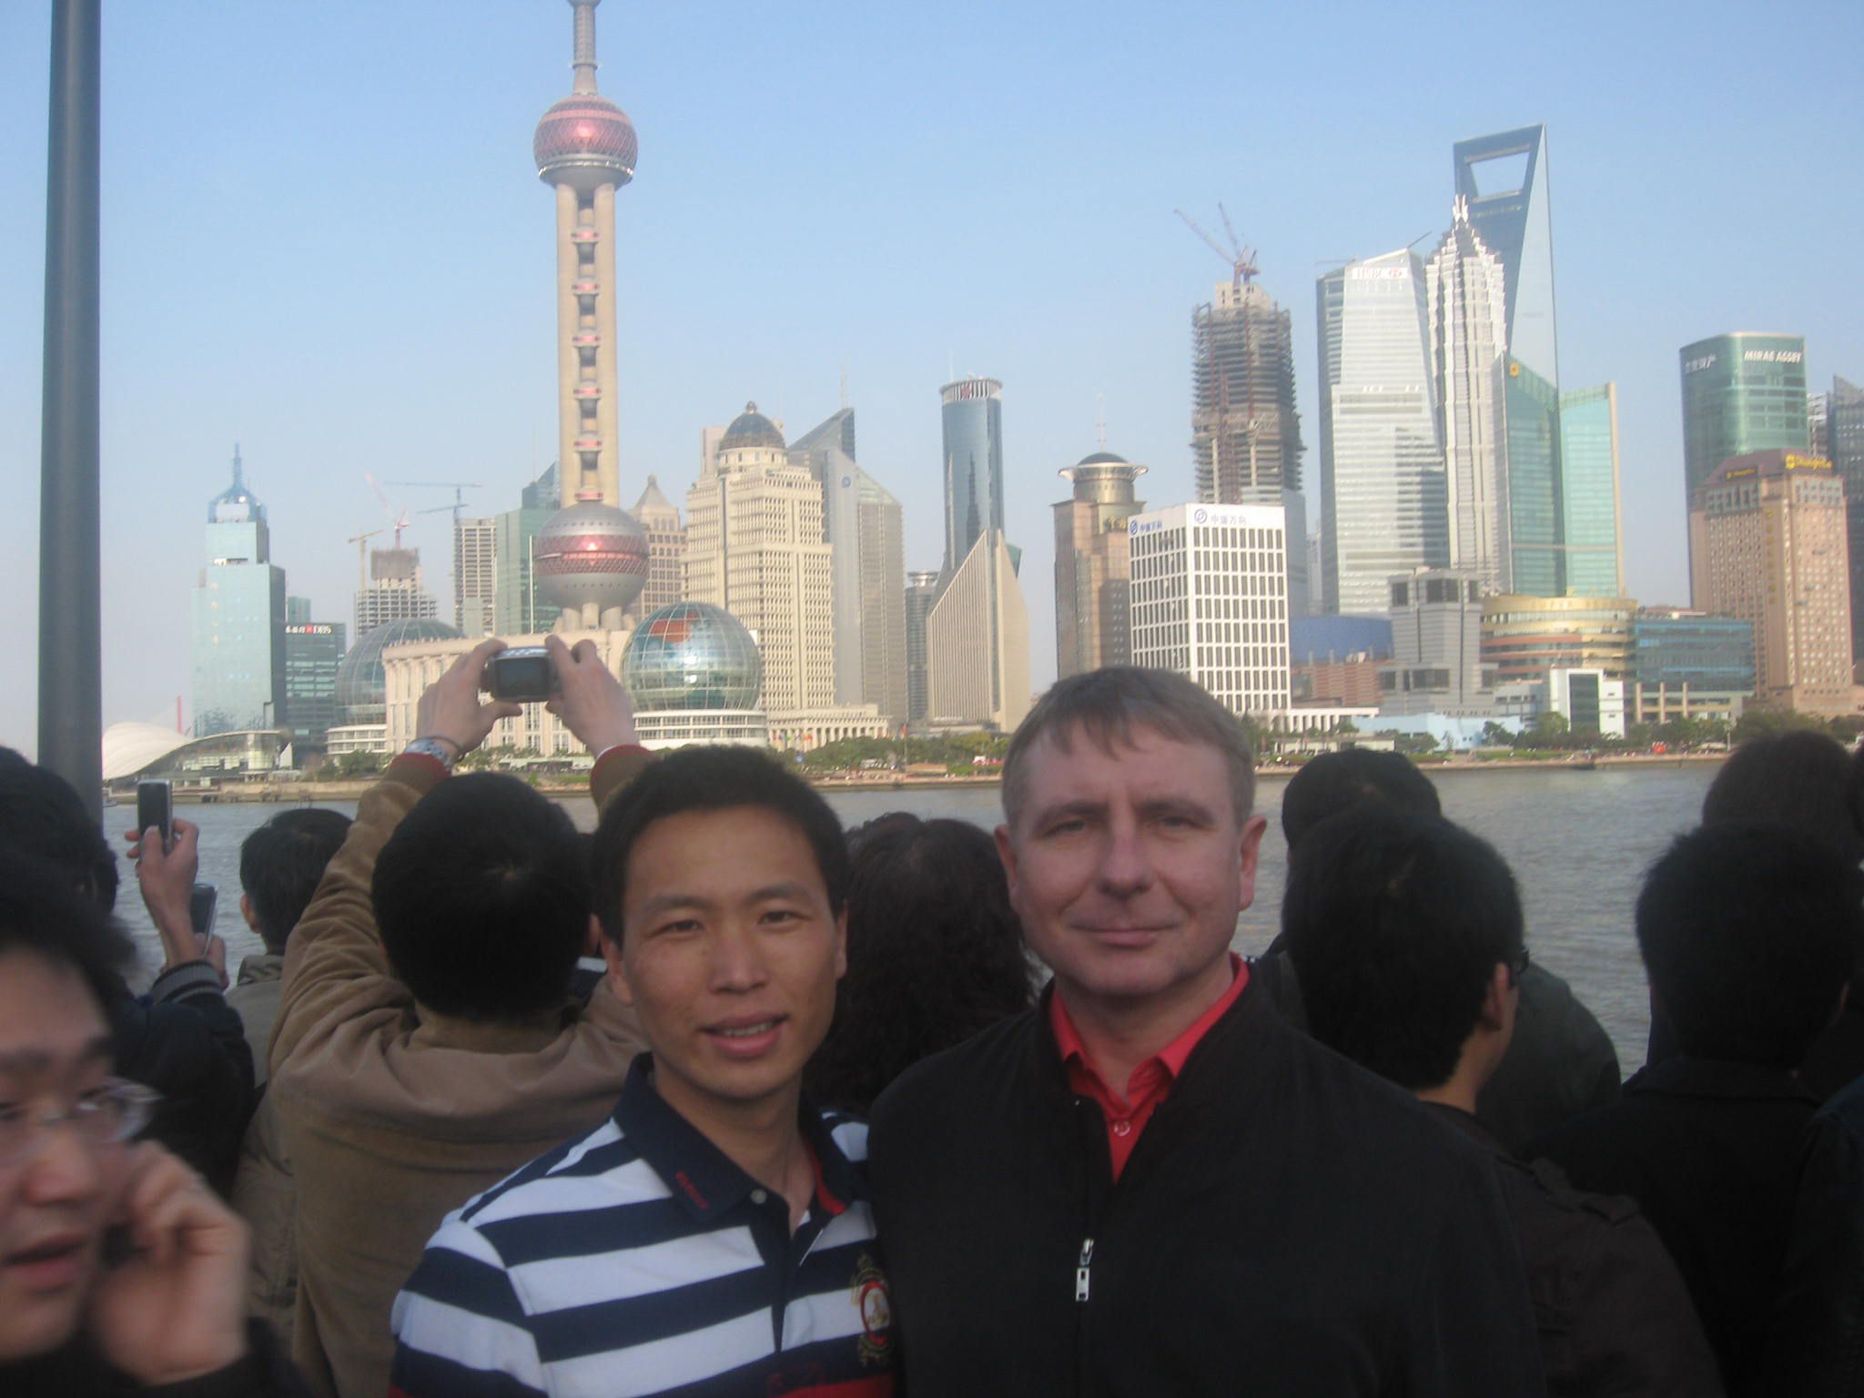 Andres Alamets kõrvuti Derry Xu´ga, kes on Eesti Väliskaubanduse Liidu esindaja Hiinas. Taustaks Shanghai üks ärirajoonidest.